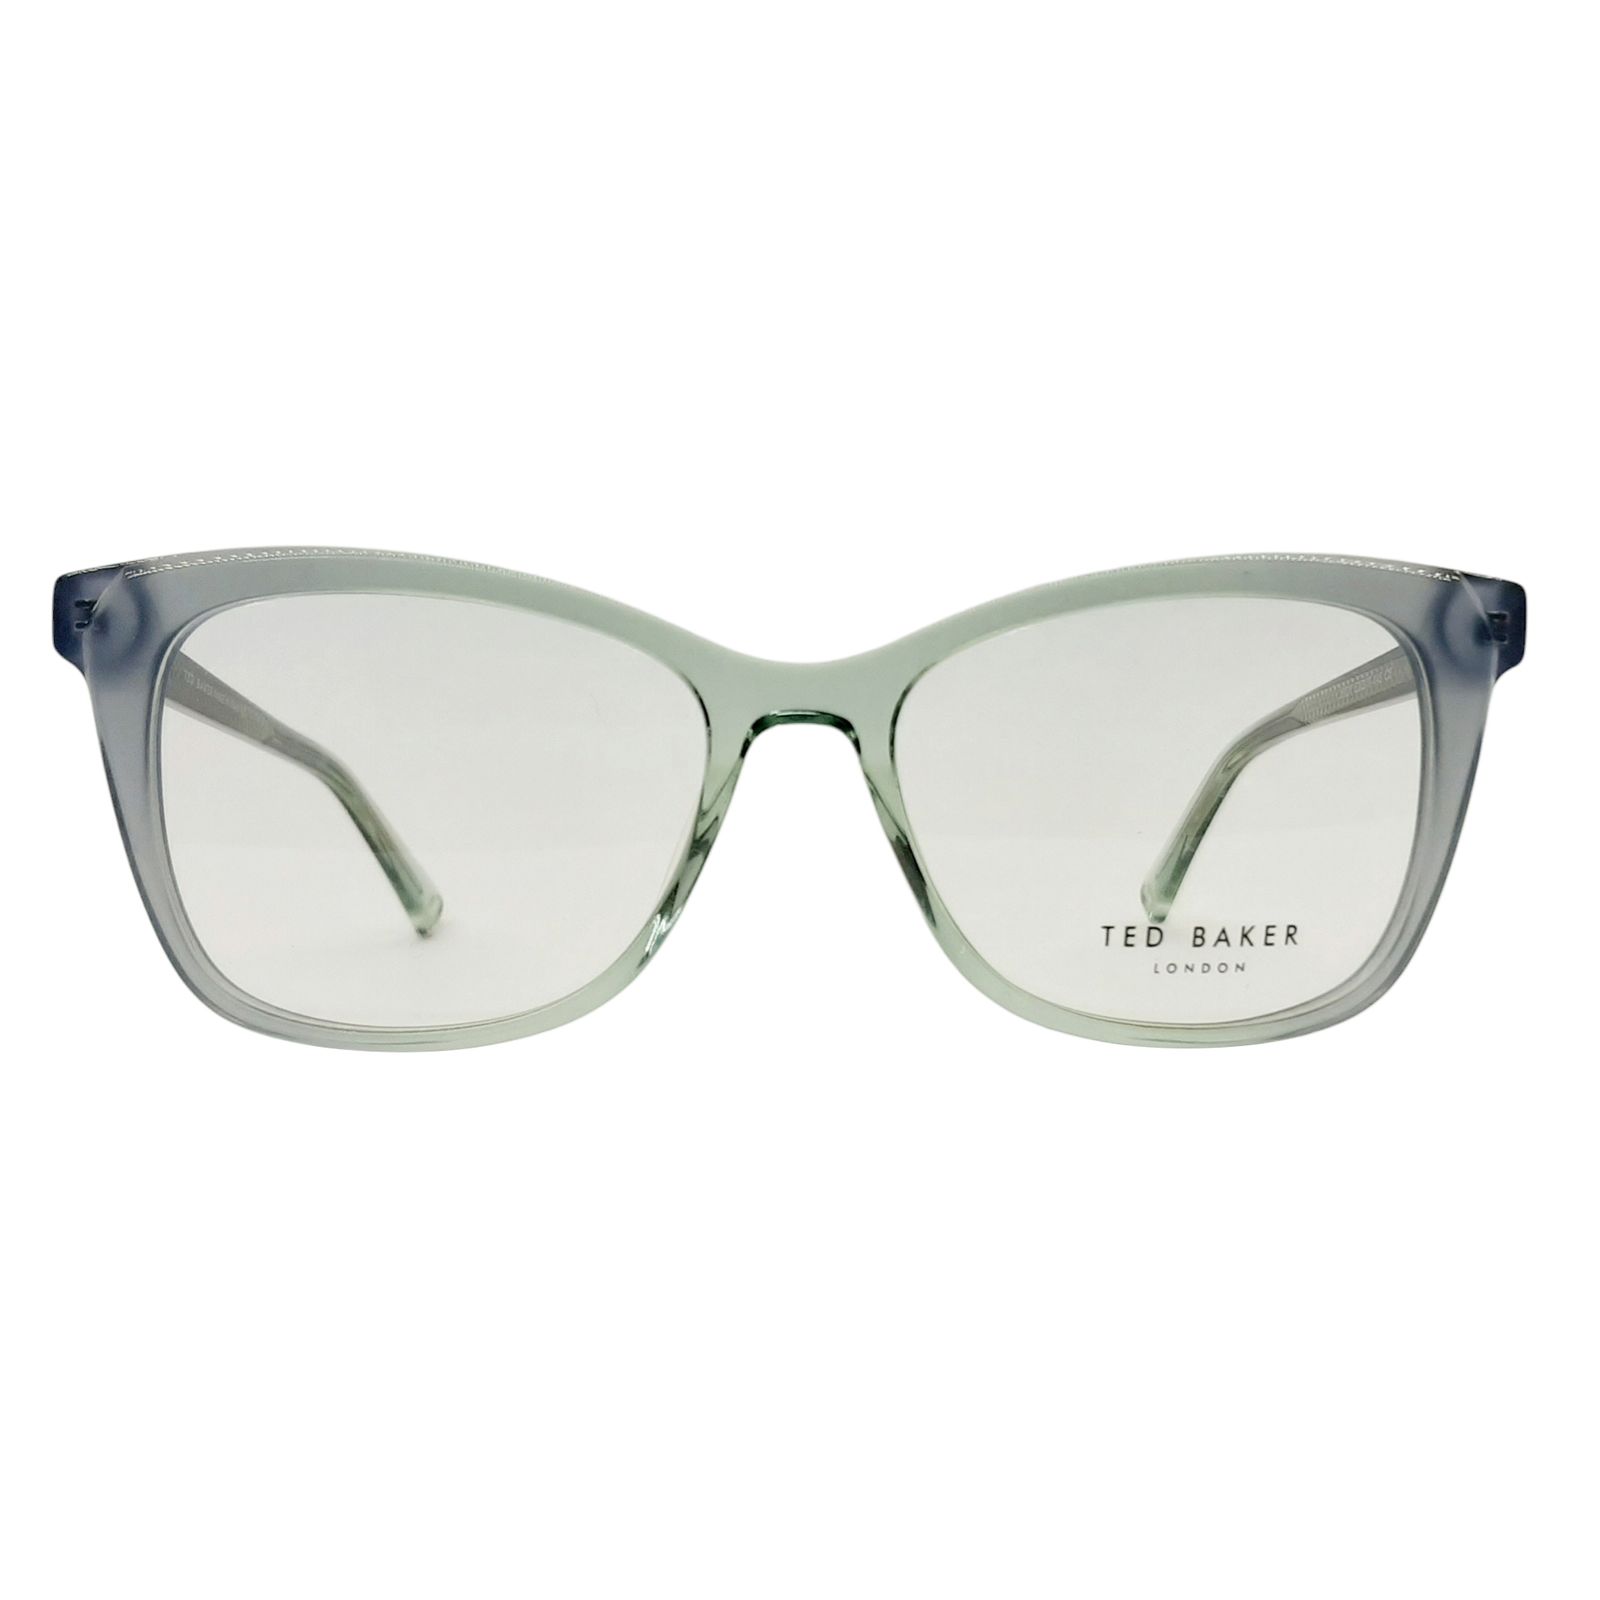 فریم عینک طبی تد بیکر مدل J6027c5